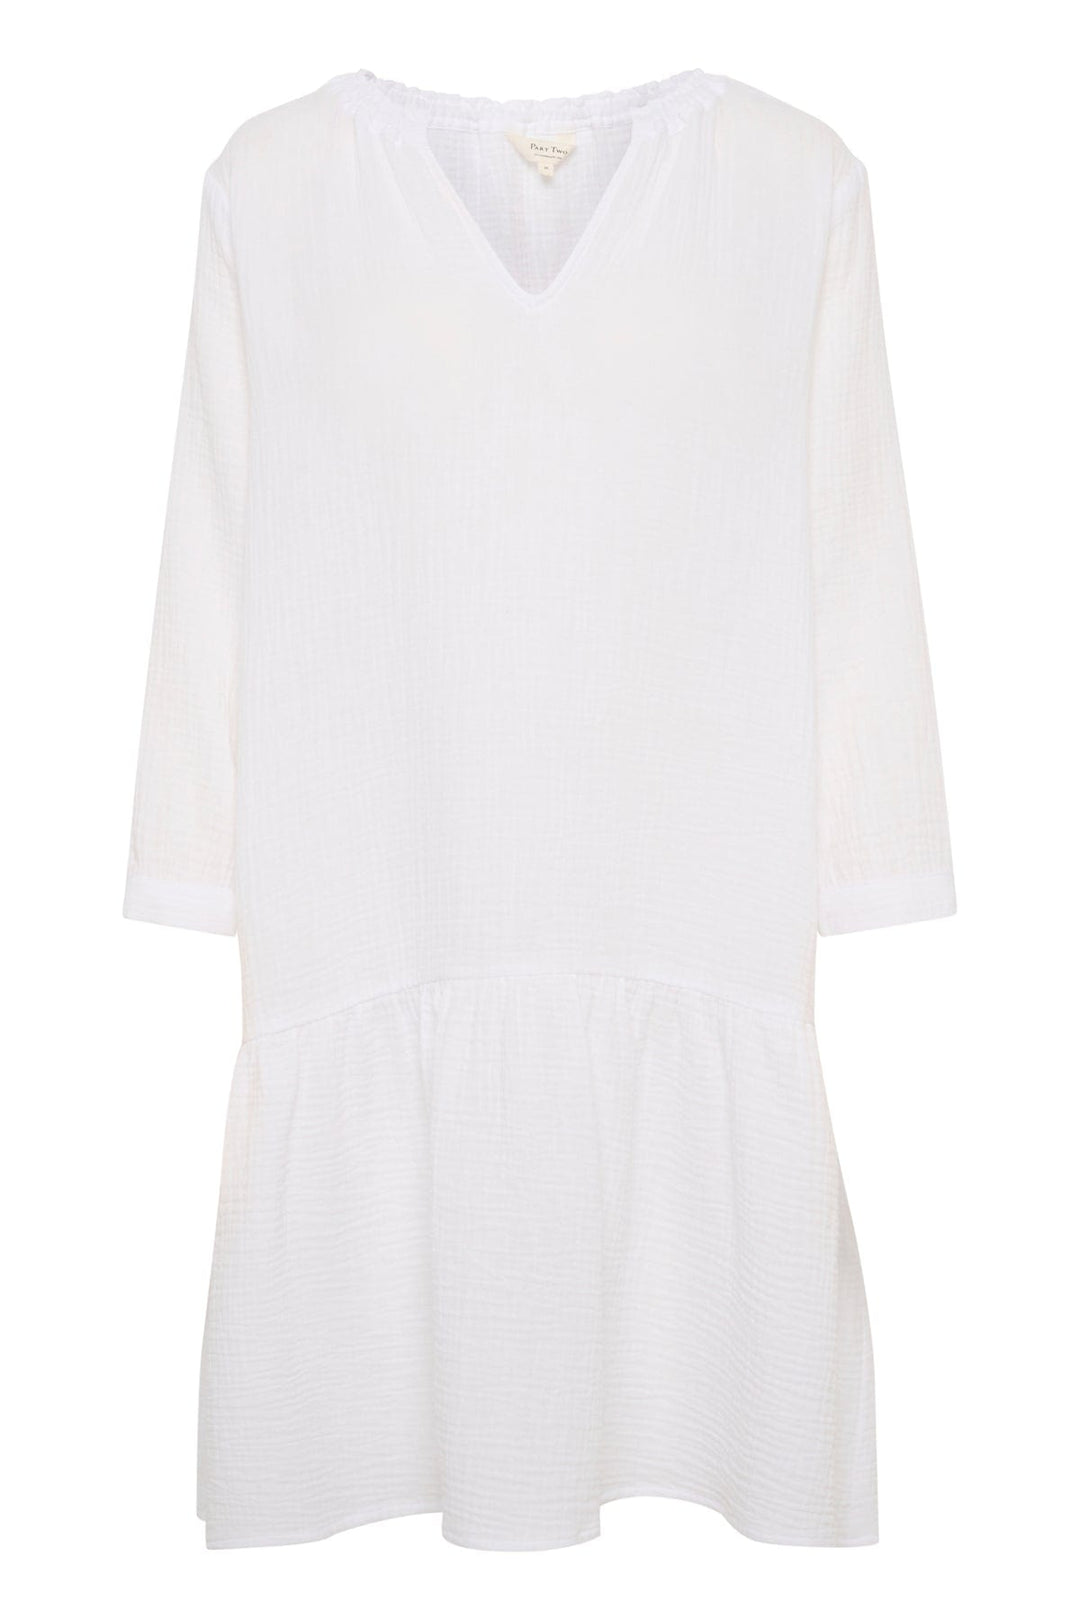 Chaniapw Dress Bright White | Kjoler | Smuk - Dameklær på nett